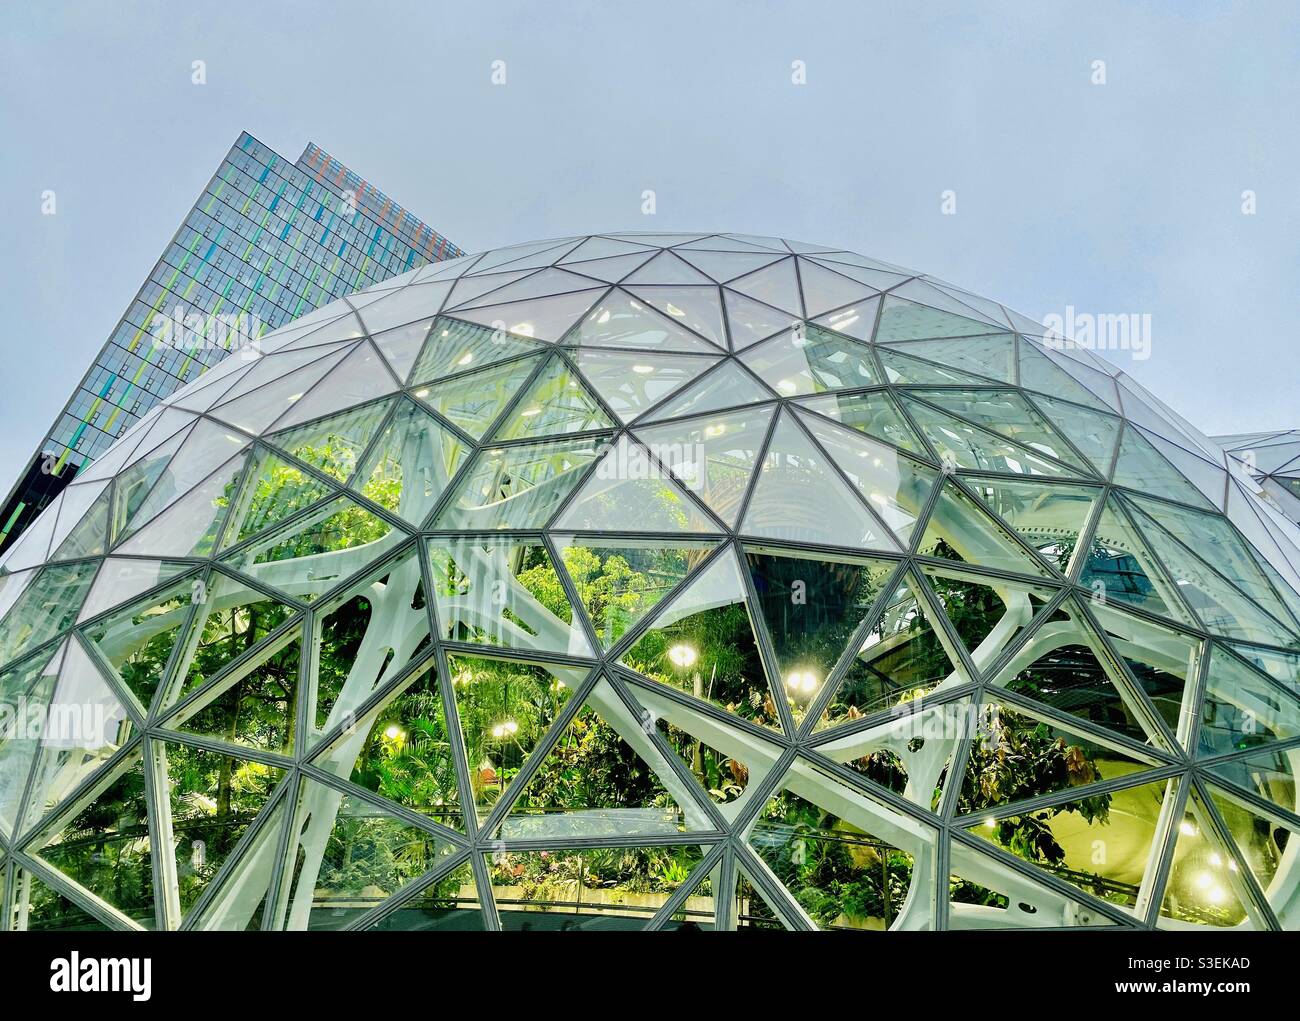 Geodesic Dome Greenhouse Stockfotos und -bilder Kaufen - Alamy